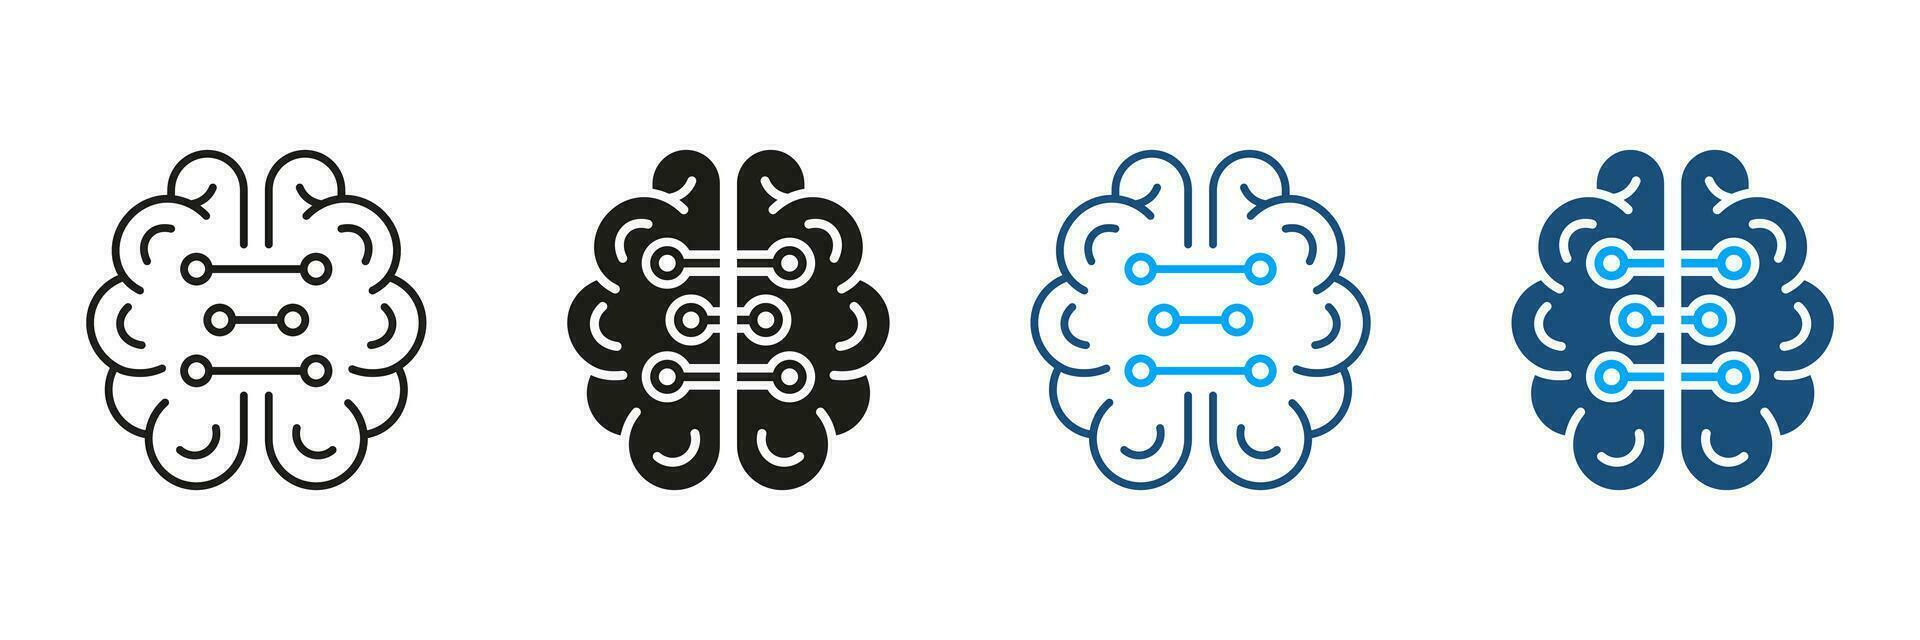 Tech scienza nero e colore pittogramma. umano cervello e digitale tecnologia simbolo collezione. neurologia e artificiale intelligenza silhouette e linea icone impostare. isolato vettore illustrazione.